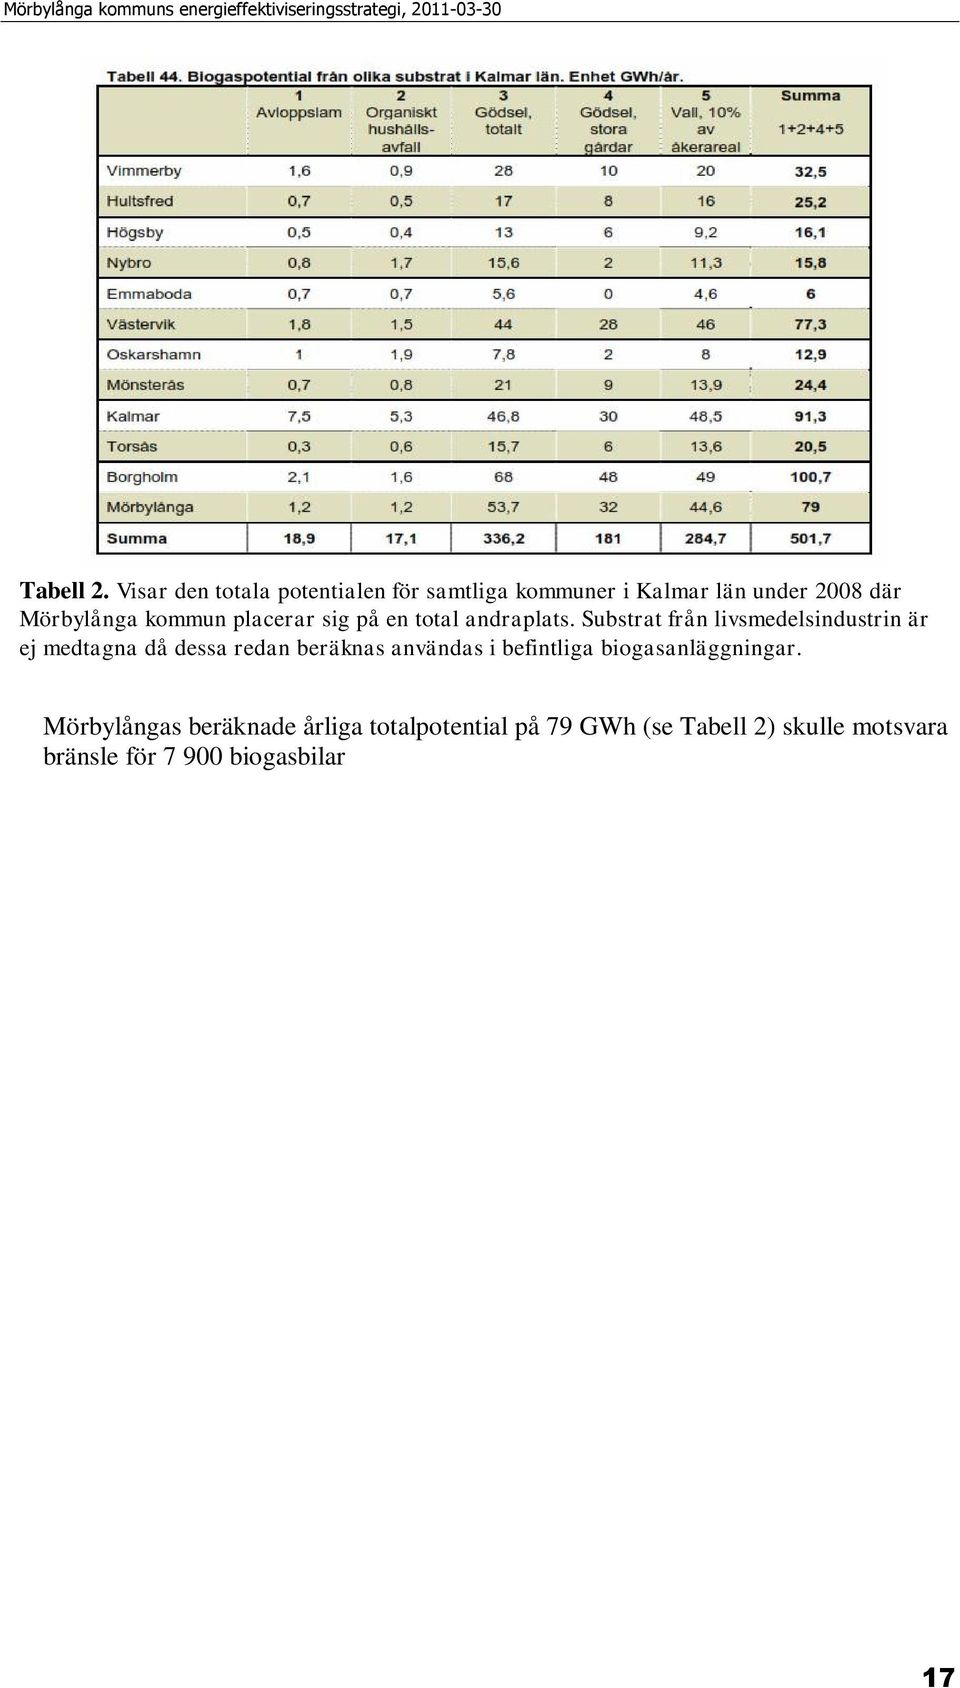 Mörbylångas beräknade årliga totalpotential på 79 GWh (se Tabell 2) skulle motsvara bränsle för 7 900 biogasbilar.